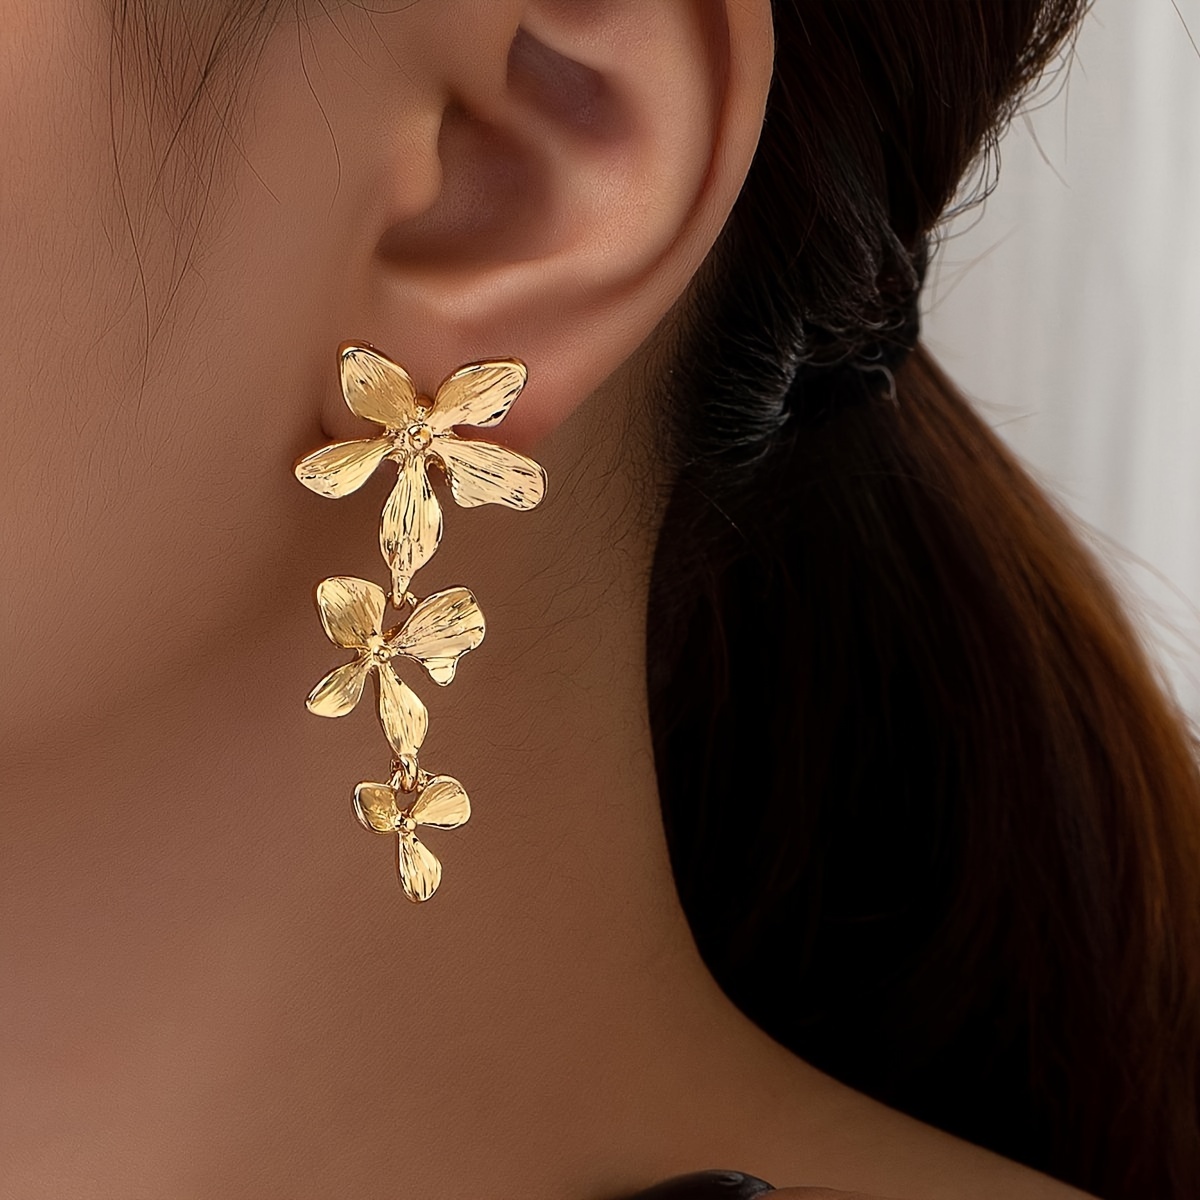 

Exquisite Golden Flower Design Dangle Earrings Elegant Luxury Style Zinc Alloy Jewelry Delicate Female Earrings